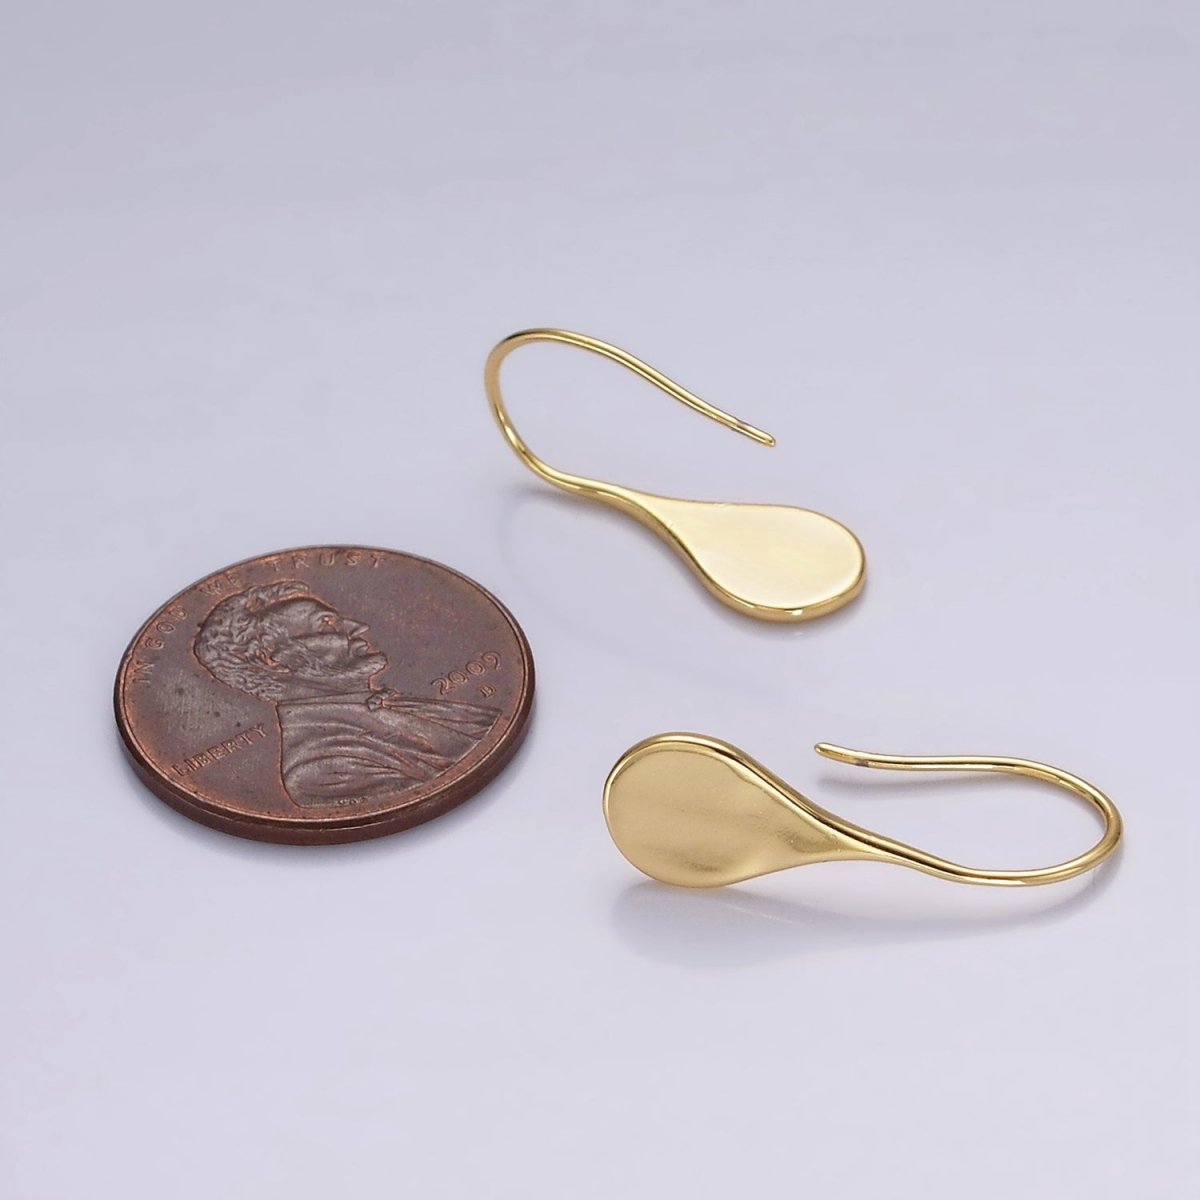 14K Gold Filled Teardrop Minimalist French Hook Earrings | AE-964 - DLUXCA